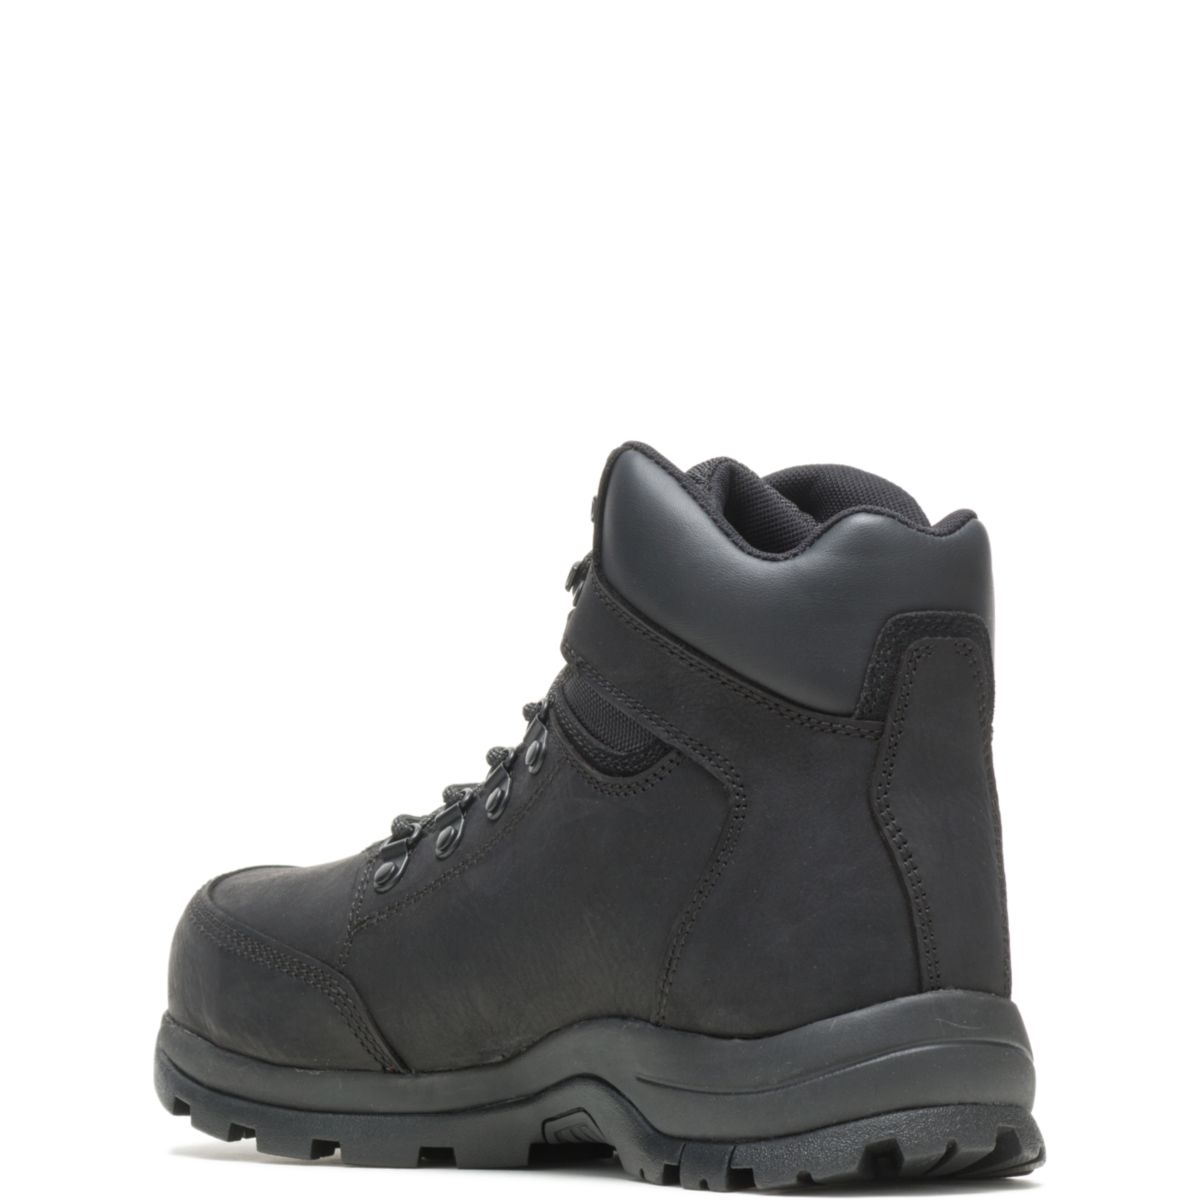 WOLVERINE Men's Grayson Steel Toe Waterproof Work Boot Black - W211042 BLACK - BLACK, 11.5 X-Wide